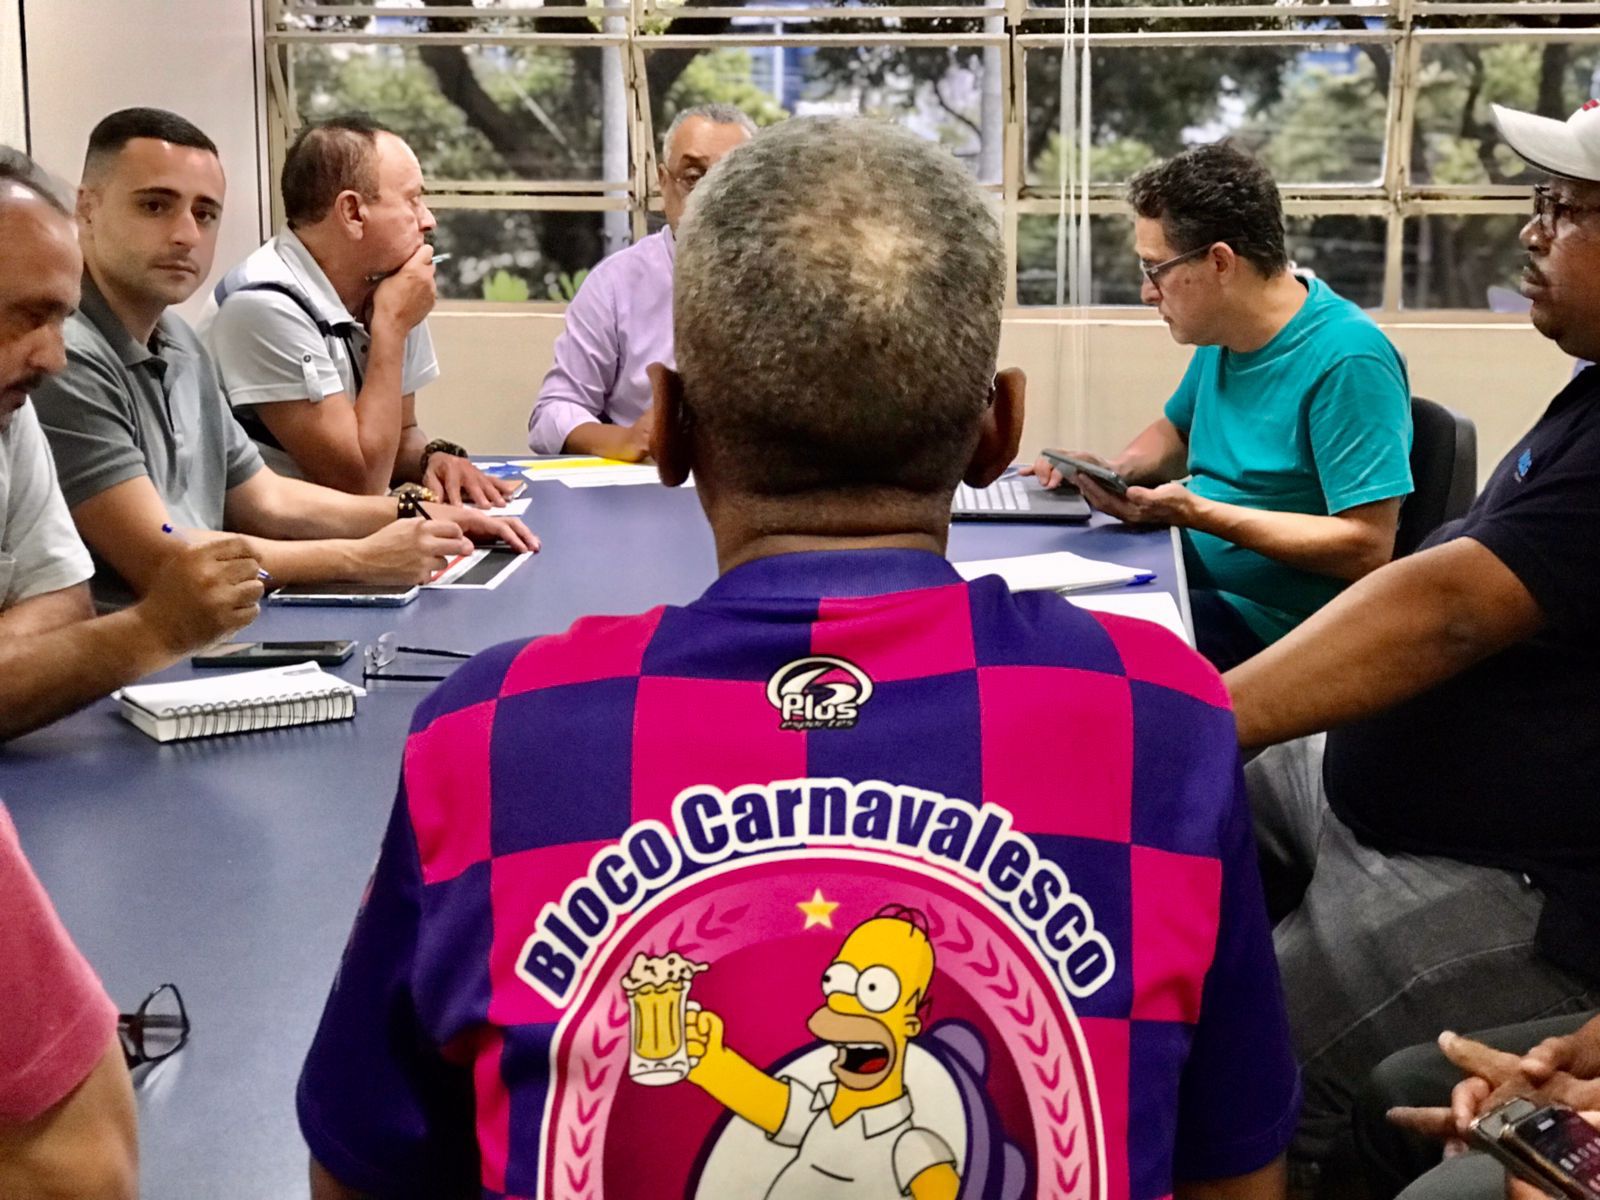 Reunião de um grupo de pessoas ao redor de uma mesa e um deles, em destaque com uma camiseta de estampa carnavalesca